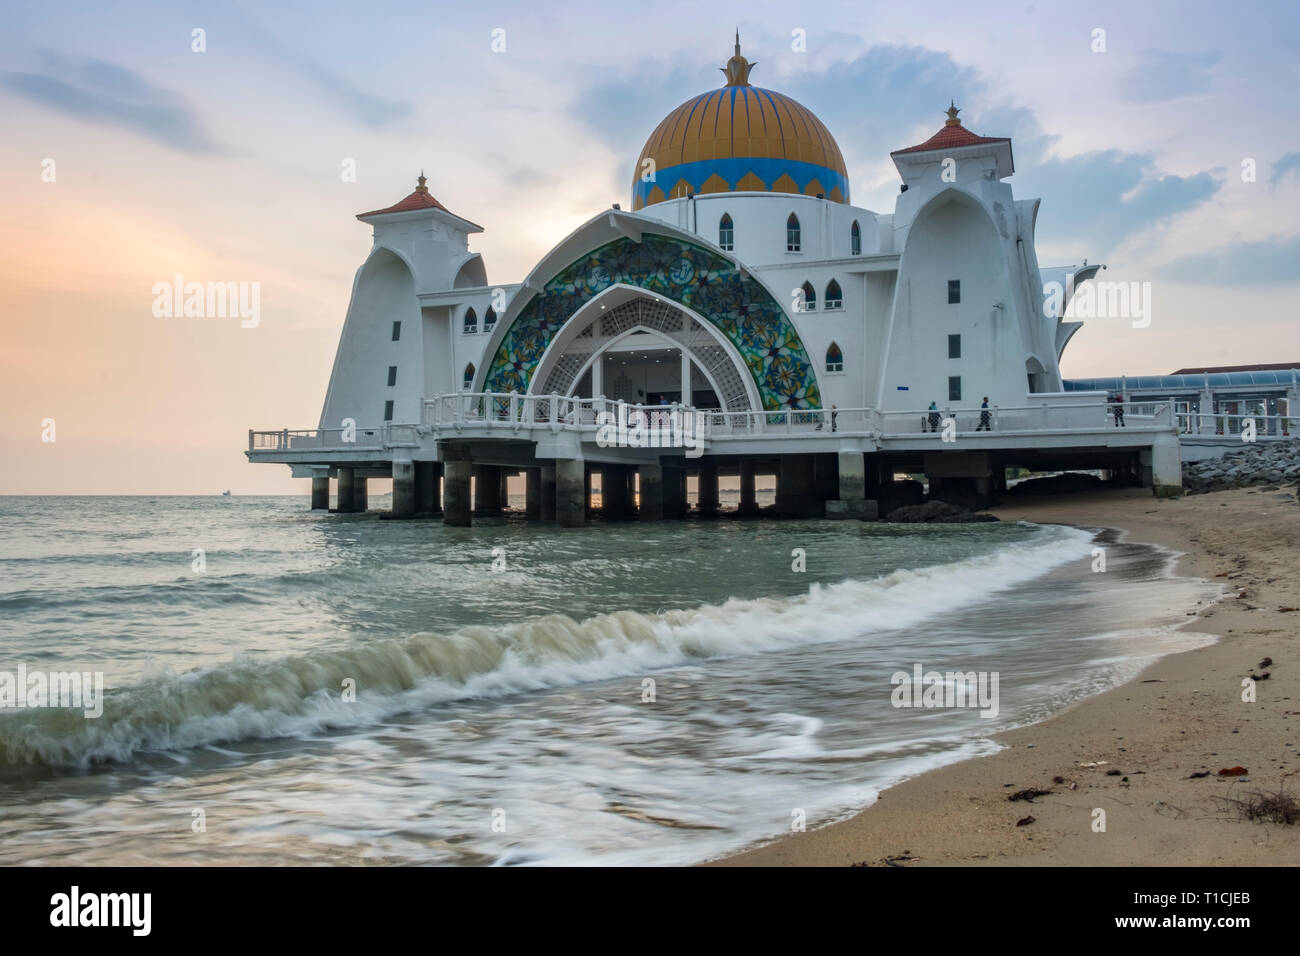 Tramonto su Melaka Straits moschea, situato in Malaysia e costruito utilizzando il mix di medio-orientale e artigianato malese, assomiglia a un struc flottante Foto Stock